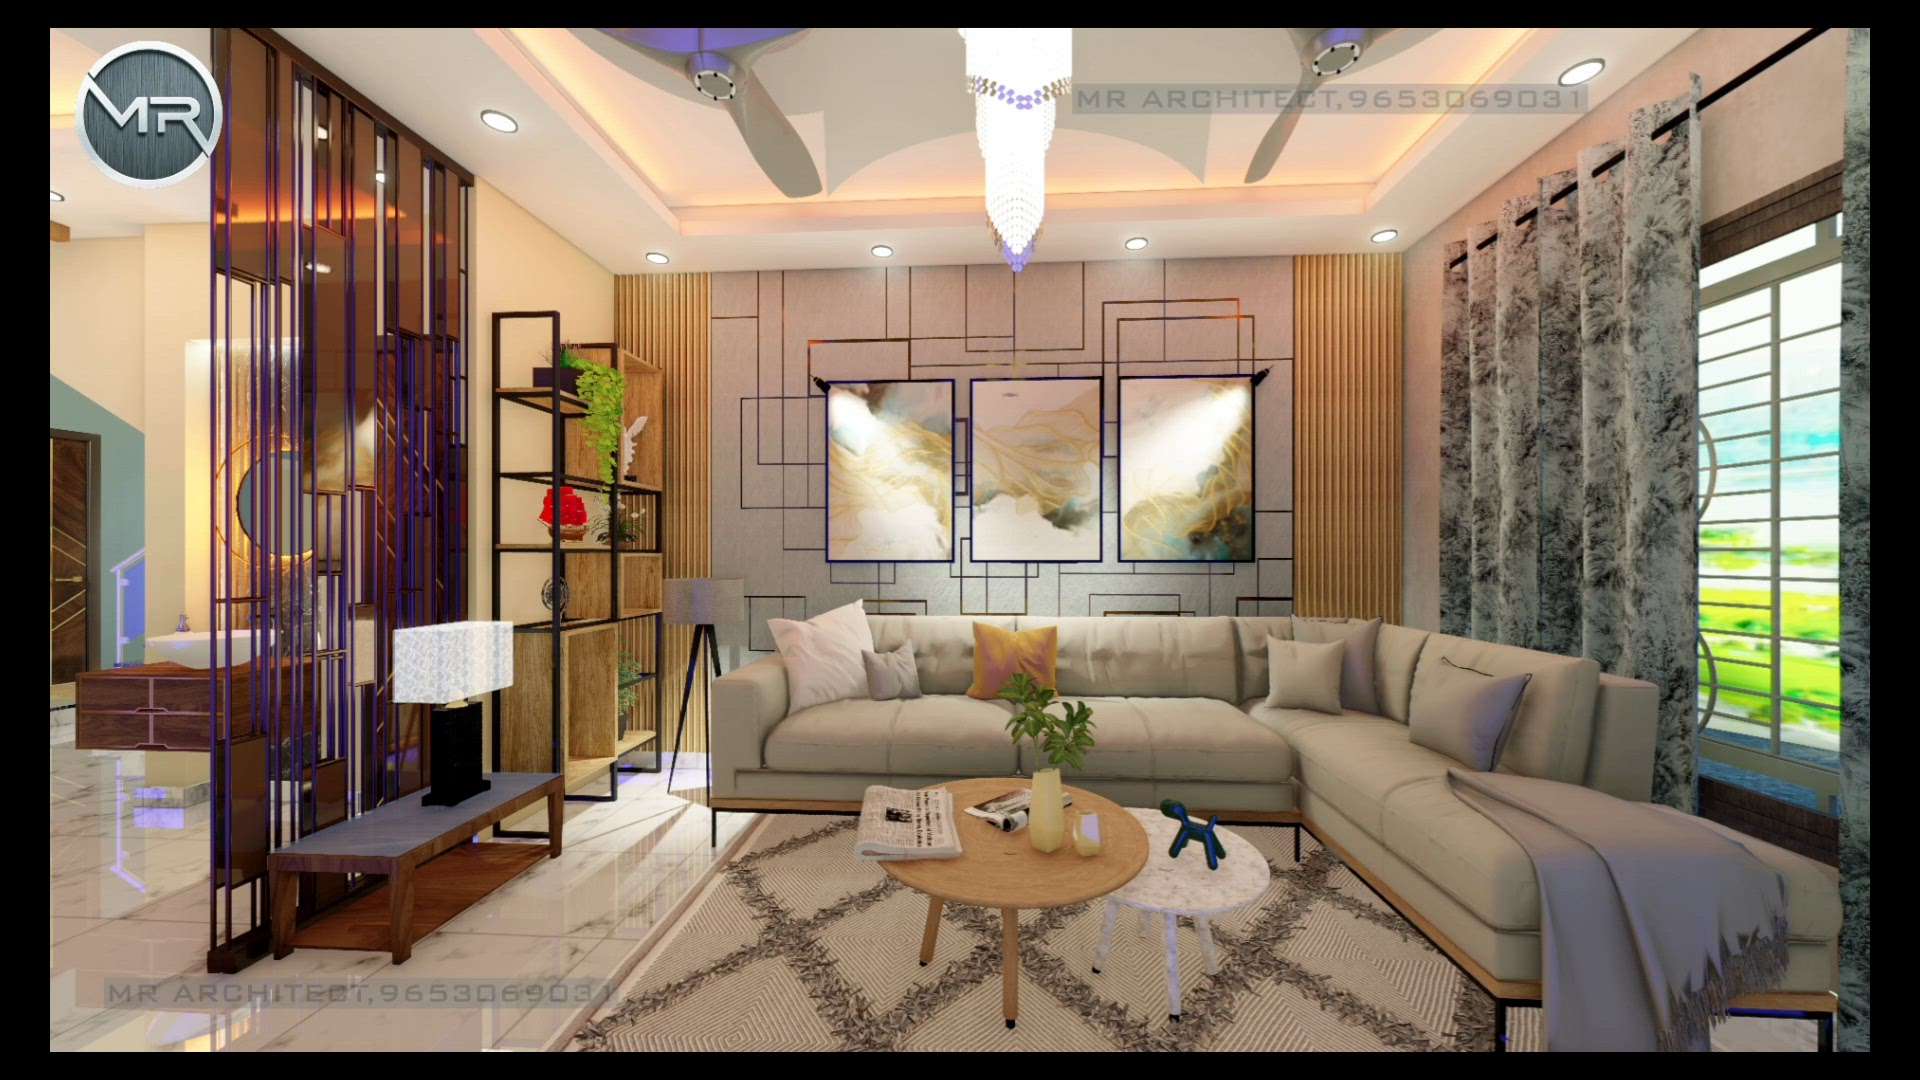 #best_architect  #interiordesign  #interiordesign  #InteriorDesigner  #livingroom  #drawingroom  #DRINTERIOR  #best_architect  #Best_designers  #Drawingroominterior